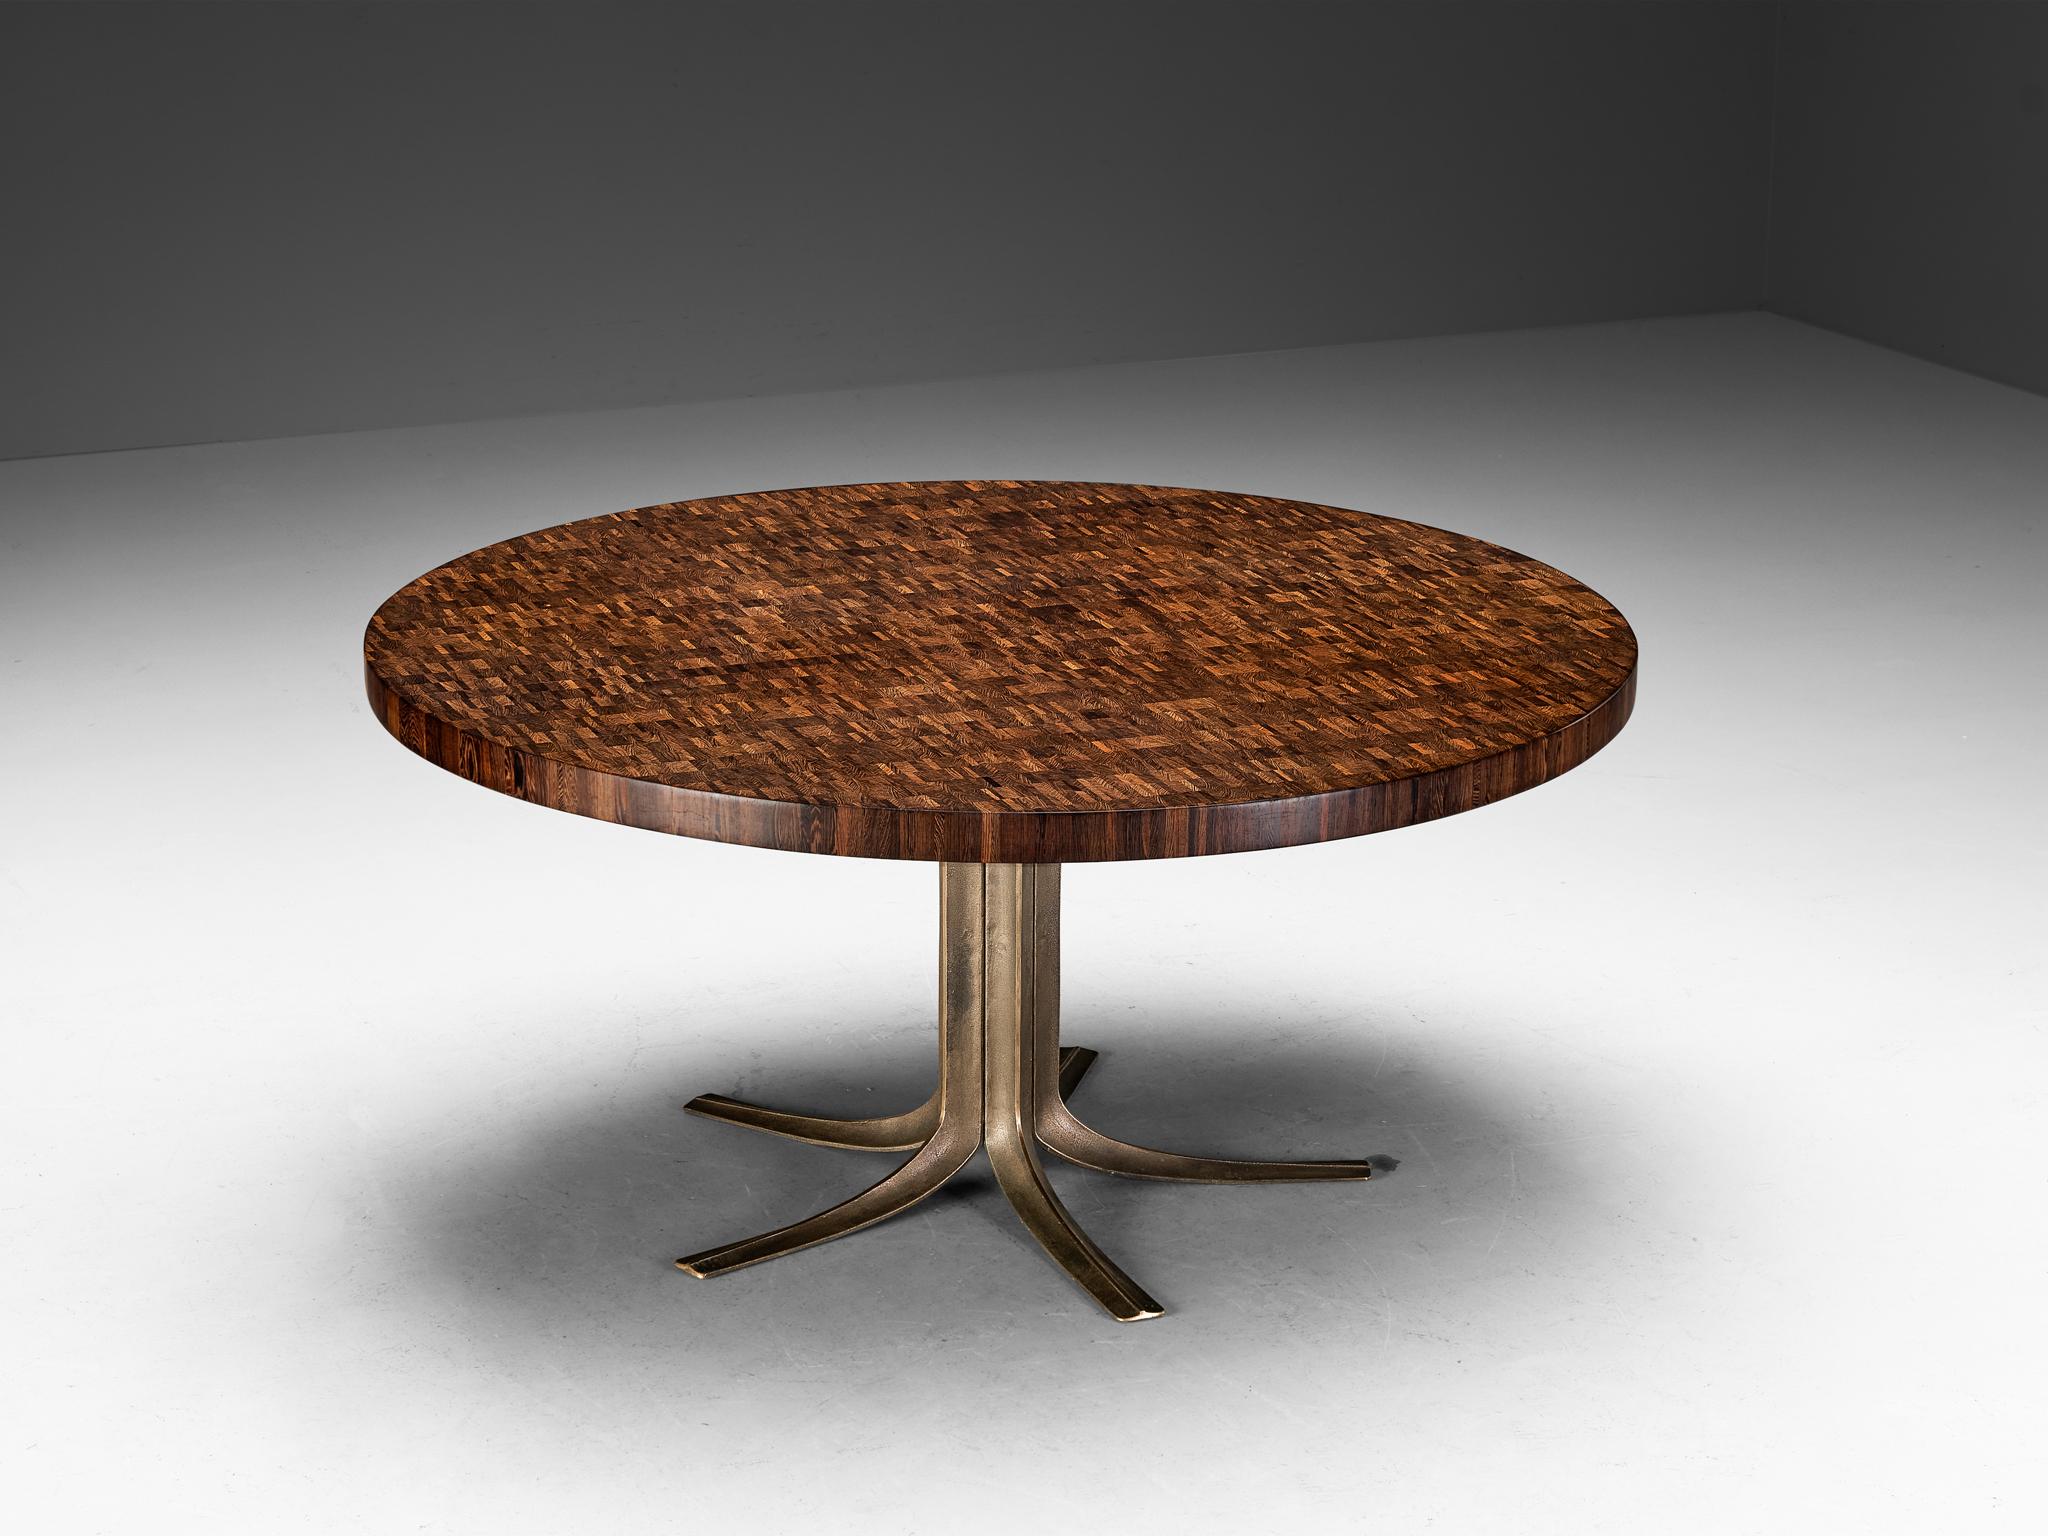 Jules Wabbes, table de salle à manger ou table centrale, bronze, wengé à grain fin, Belgique, années 1960 

Jules ROOMS a créé un meuble exceptionnel qui mérite une place de choix dans le salon. Le plateau de la table doit son aspect complexe à